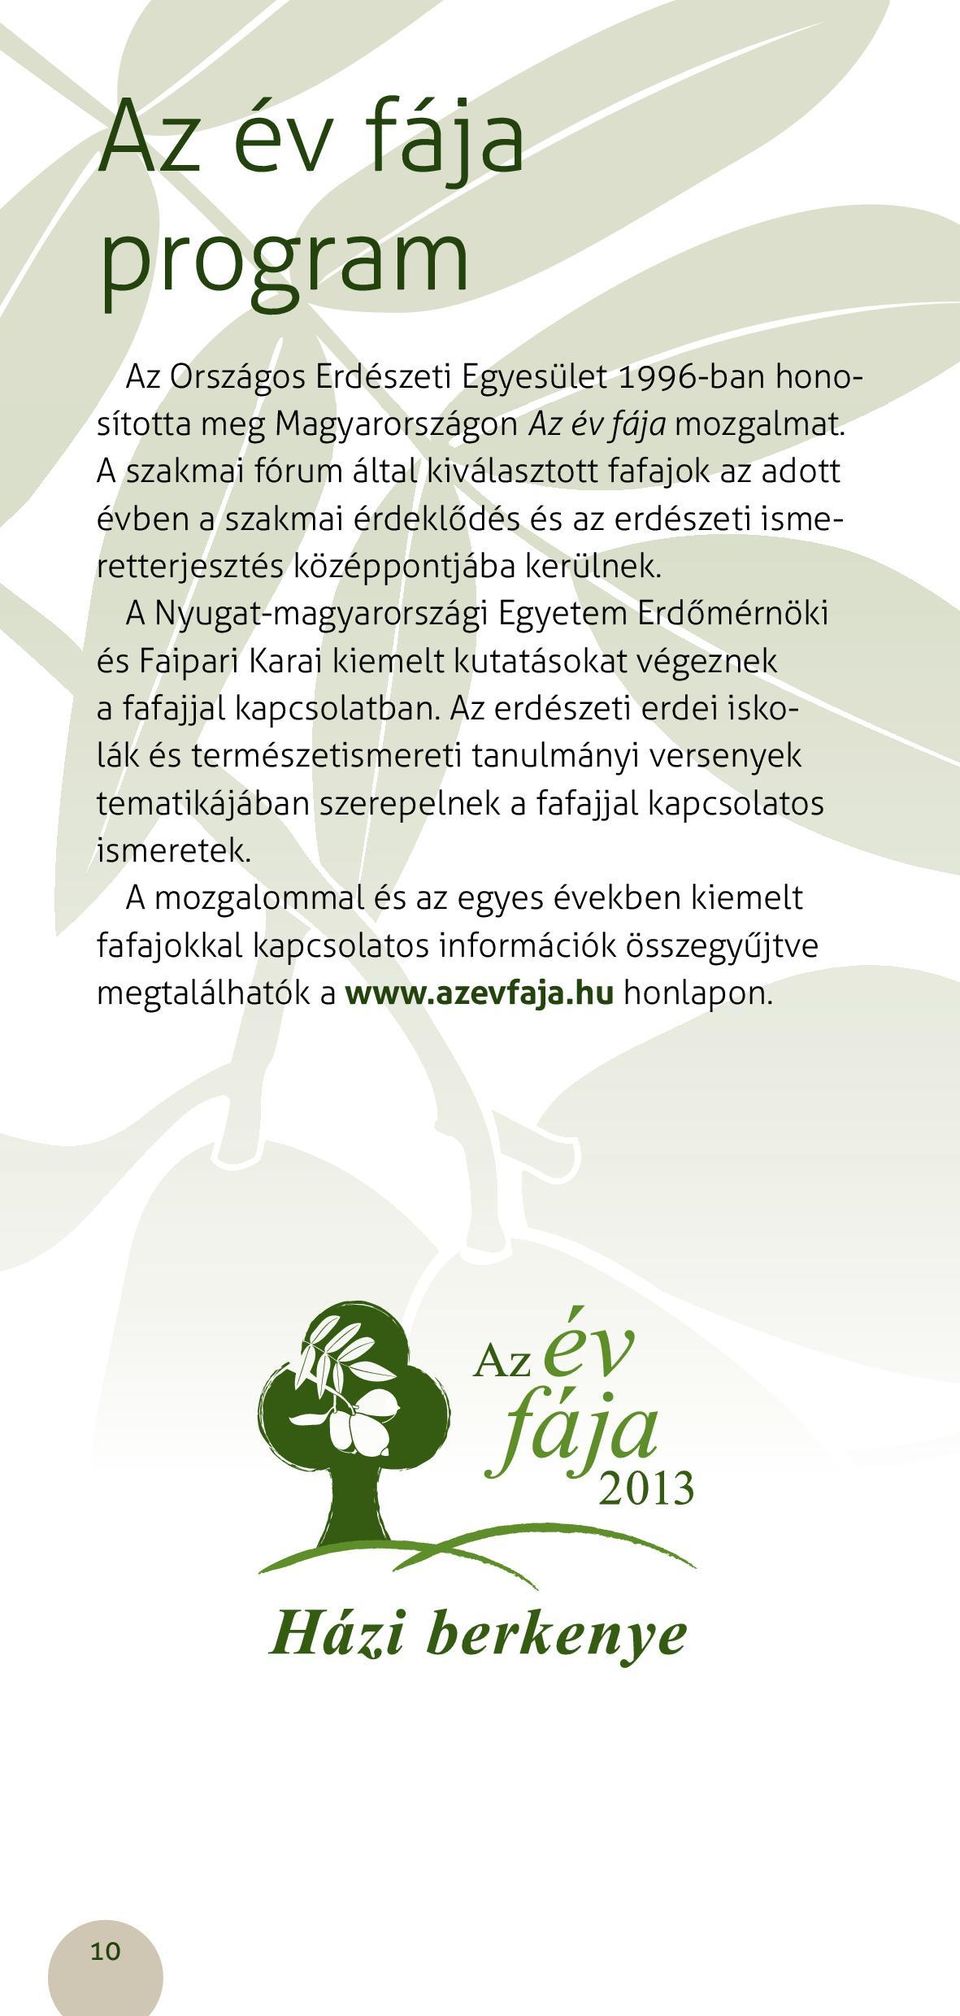 A Nyugat-magyarországi Egyetem Erdőmérnöki és Faipari Karai kiemelt kutatásokat végeznek a fafajjal kapcsolatban.